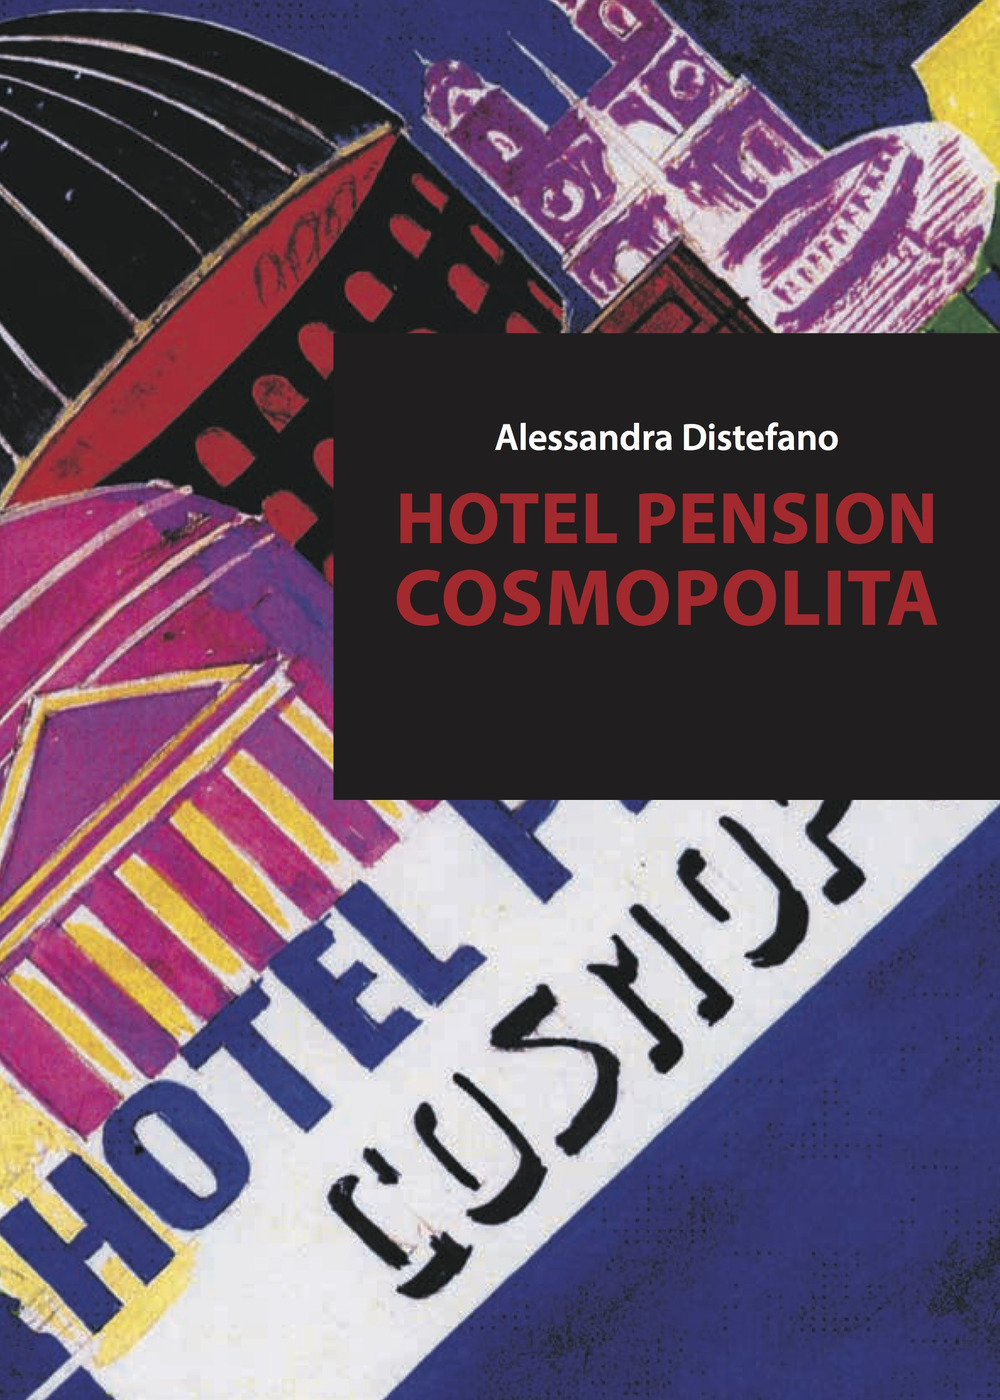 Hotel pension cosmopolita